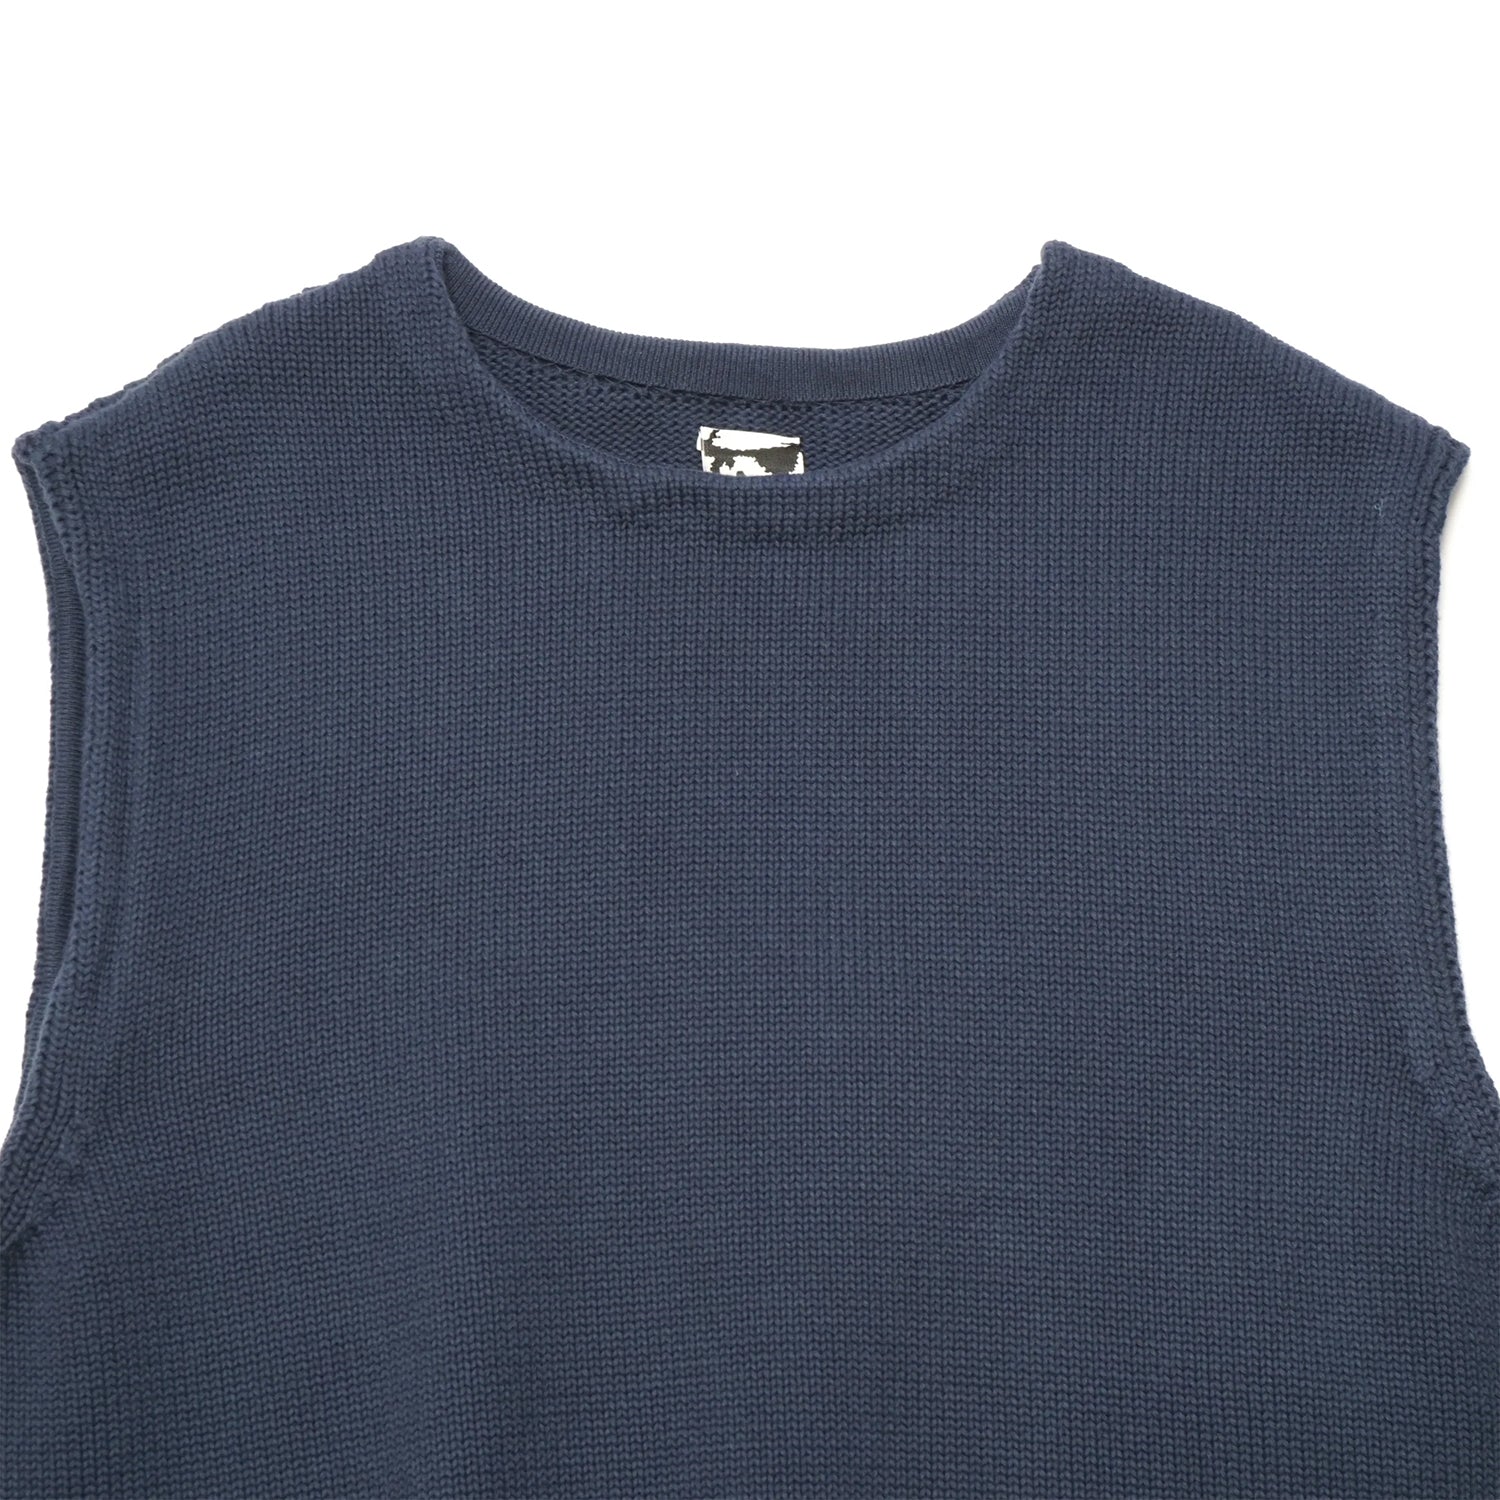 Cotton Knit Vest (Navy)